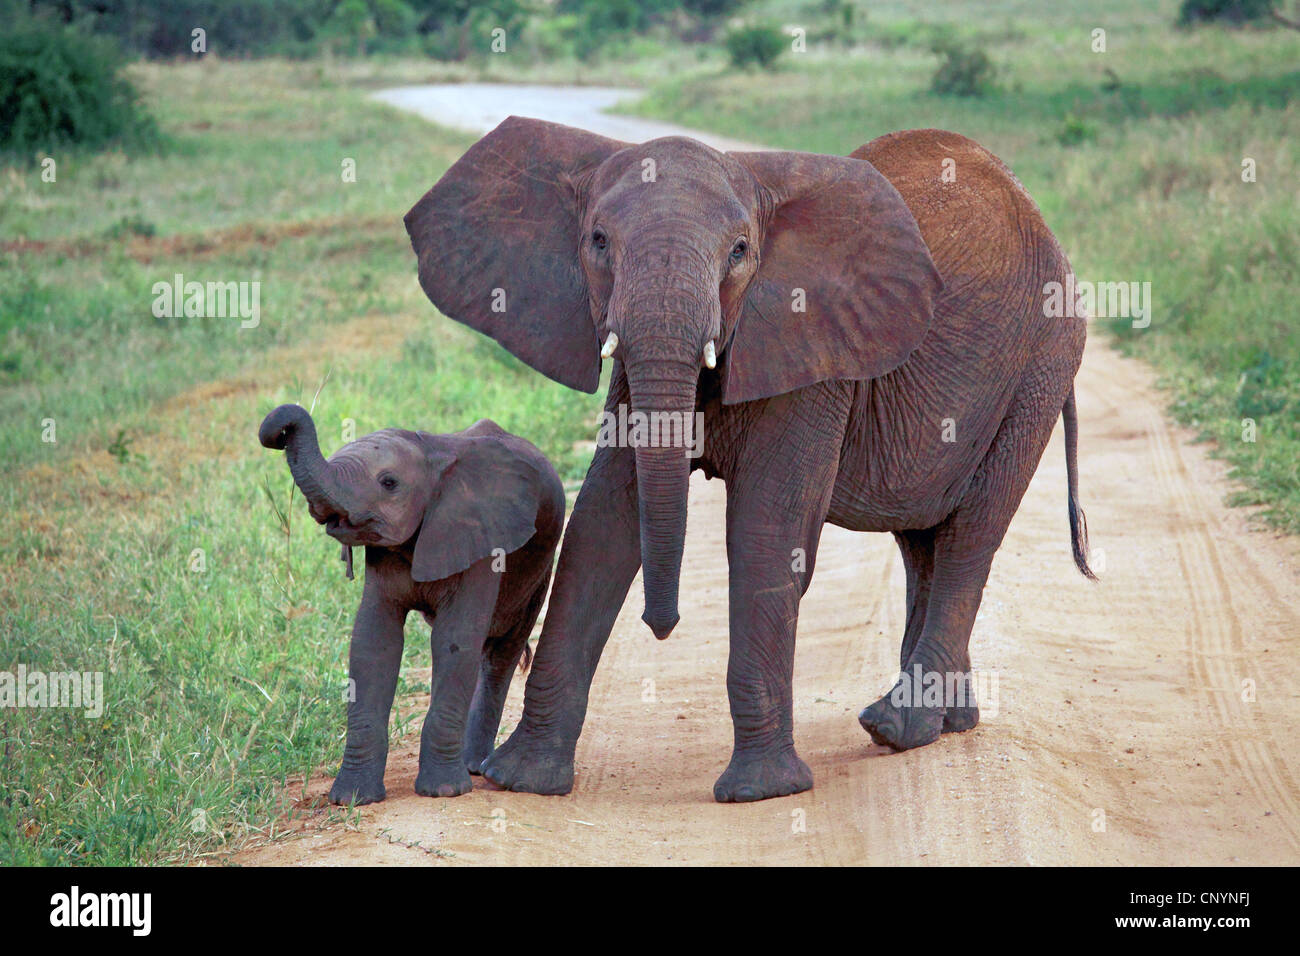 Elefante africano de sabana, el elefante africano (Loxodonta africana) oxyotis vaca, ir a dar un paseo con su animal joven, Tanzania, Parque Nacional Tarangire Foto de stock